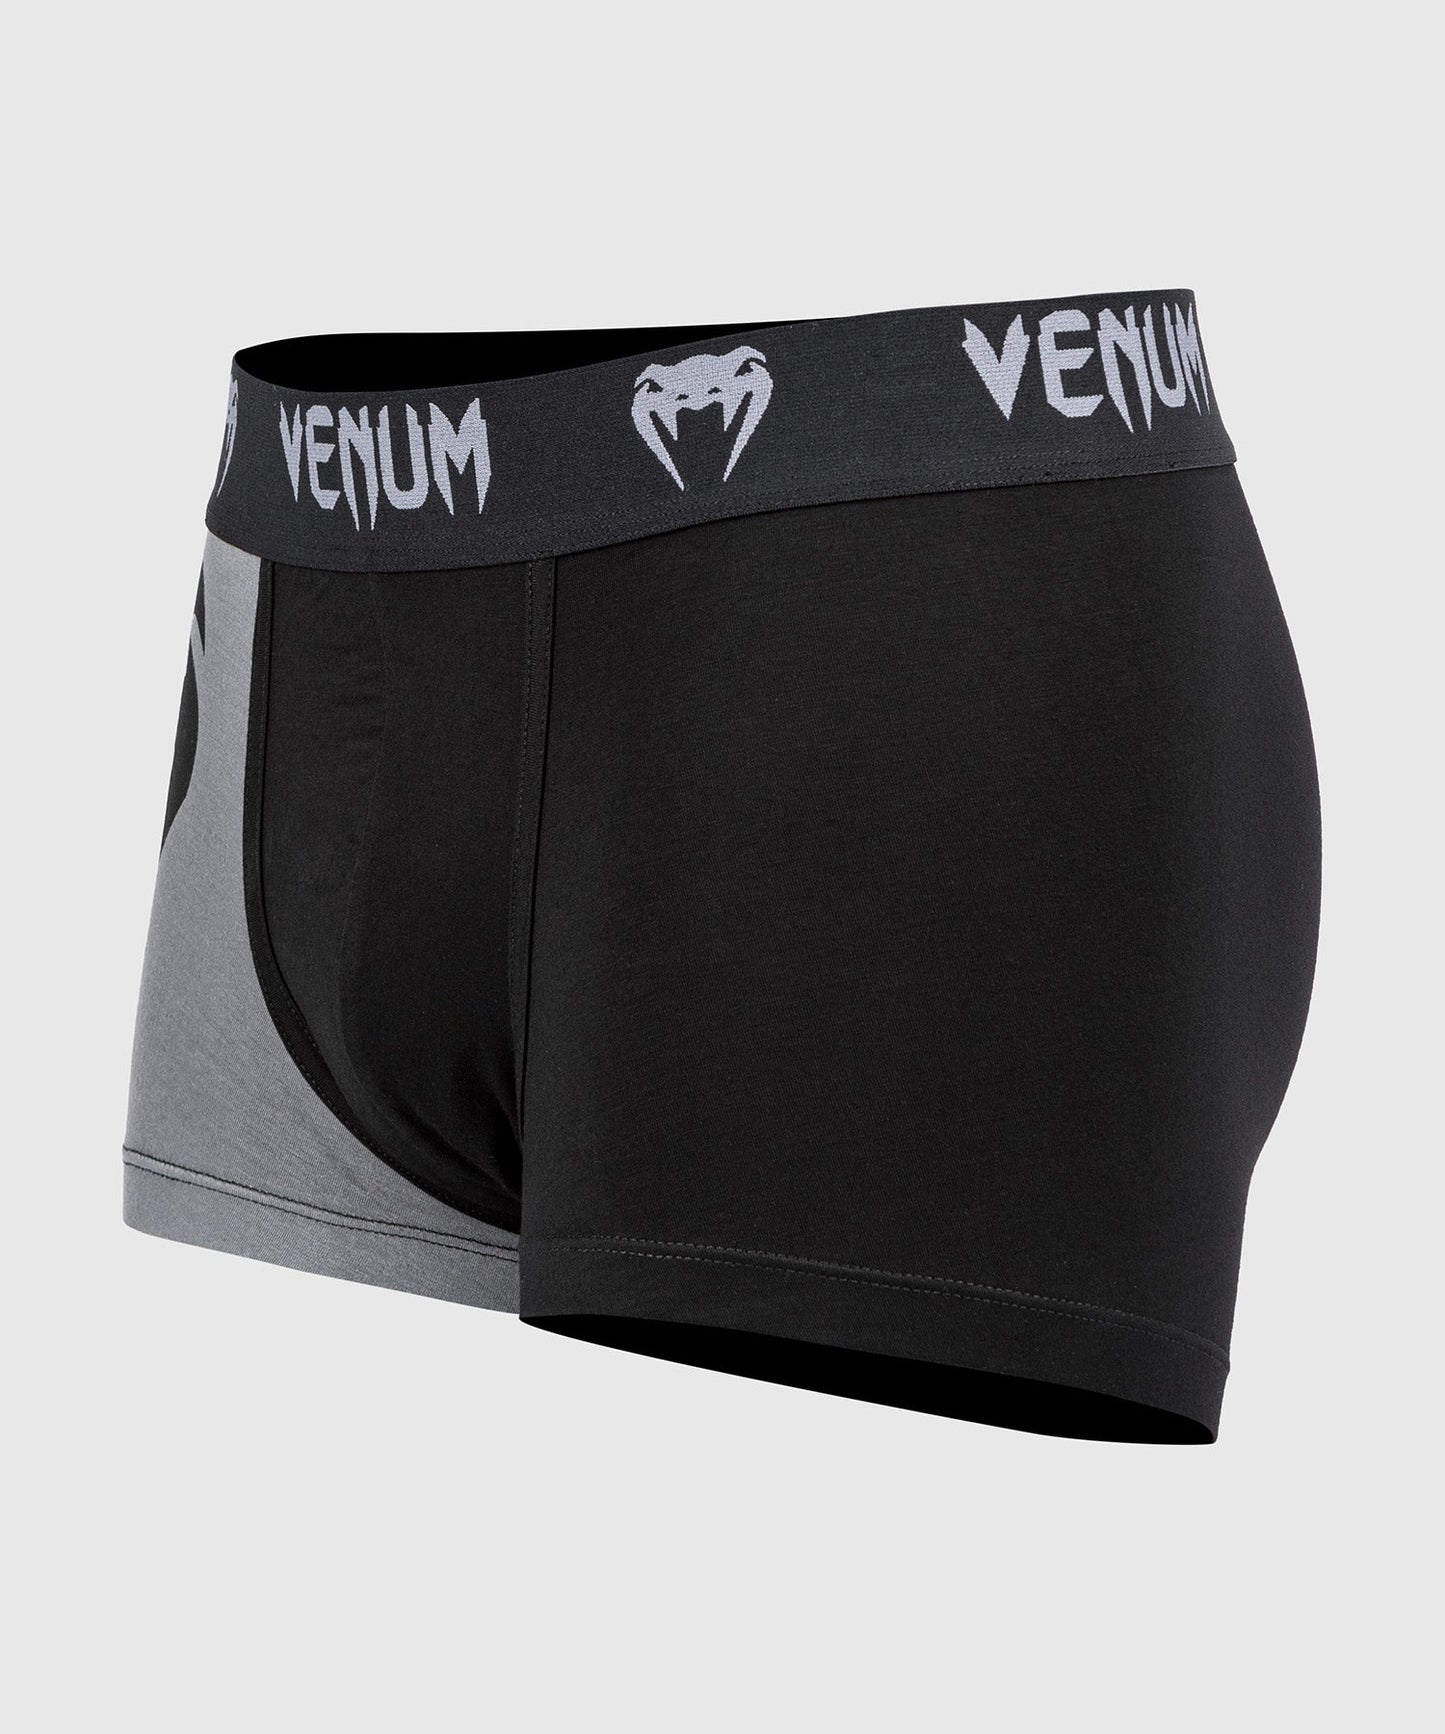 Venum Giant Underwear - Black/Grey